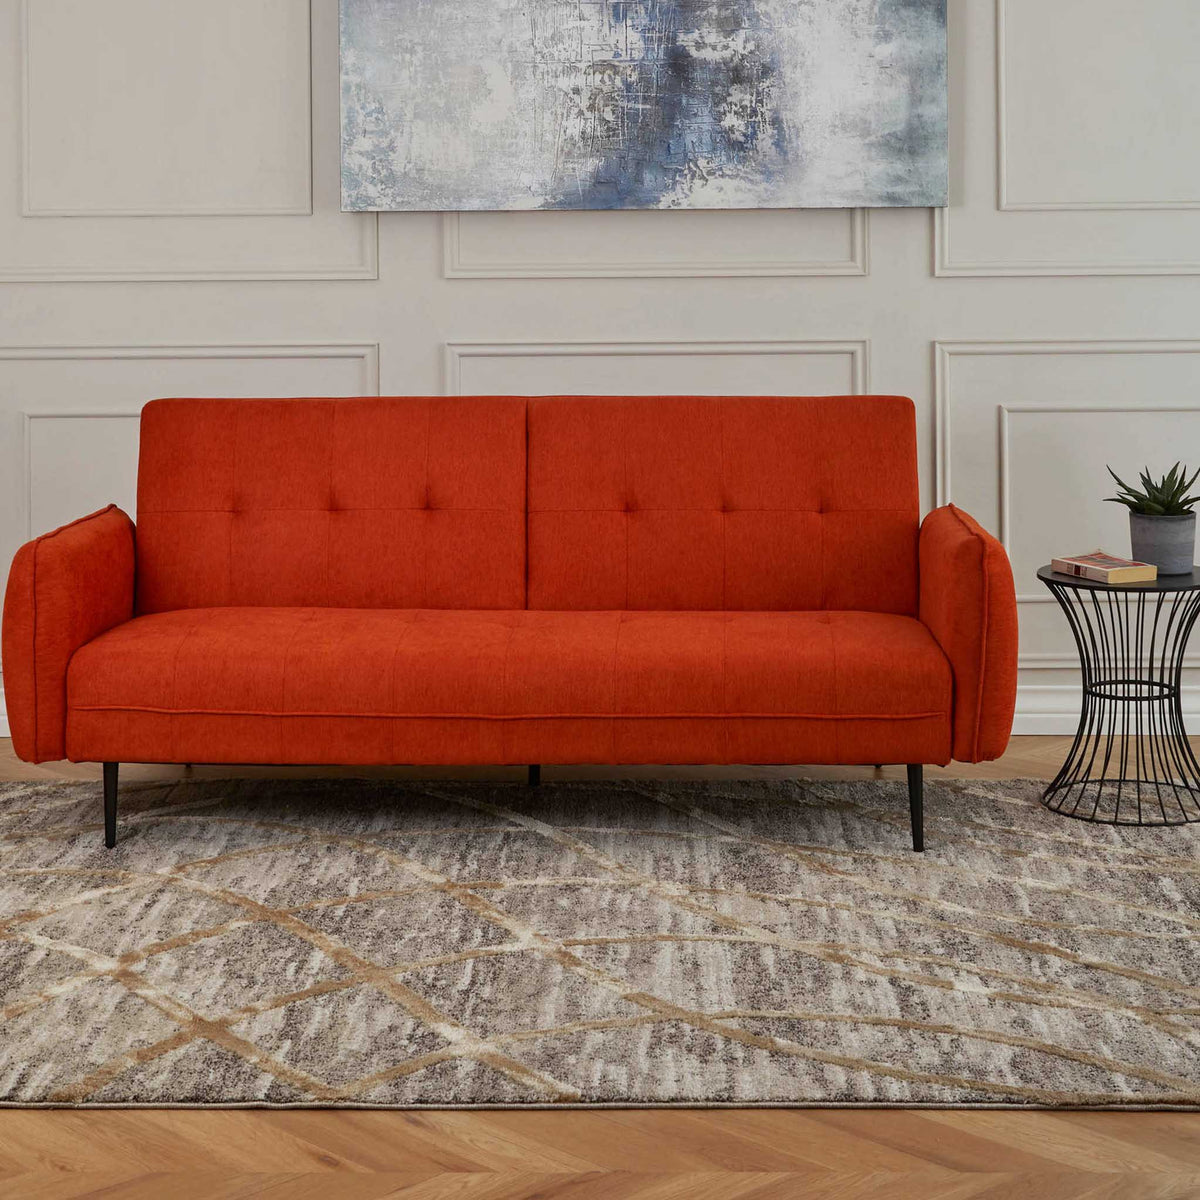 Askew orange linen click clack sofa bed for living room or bedroom